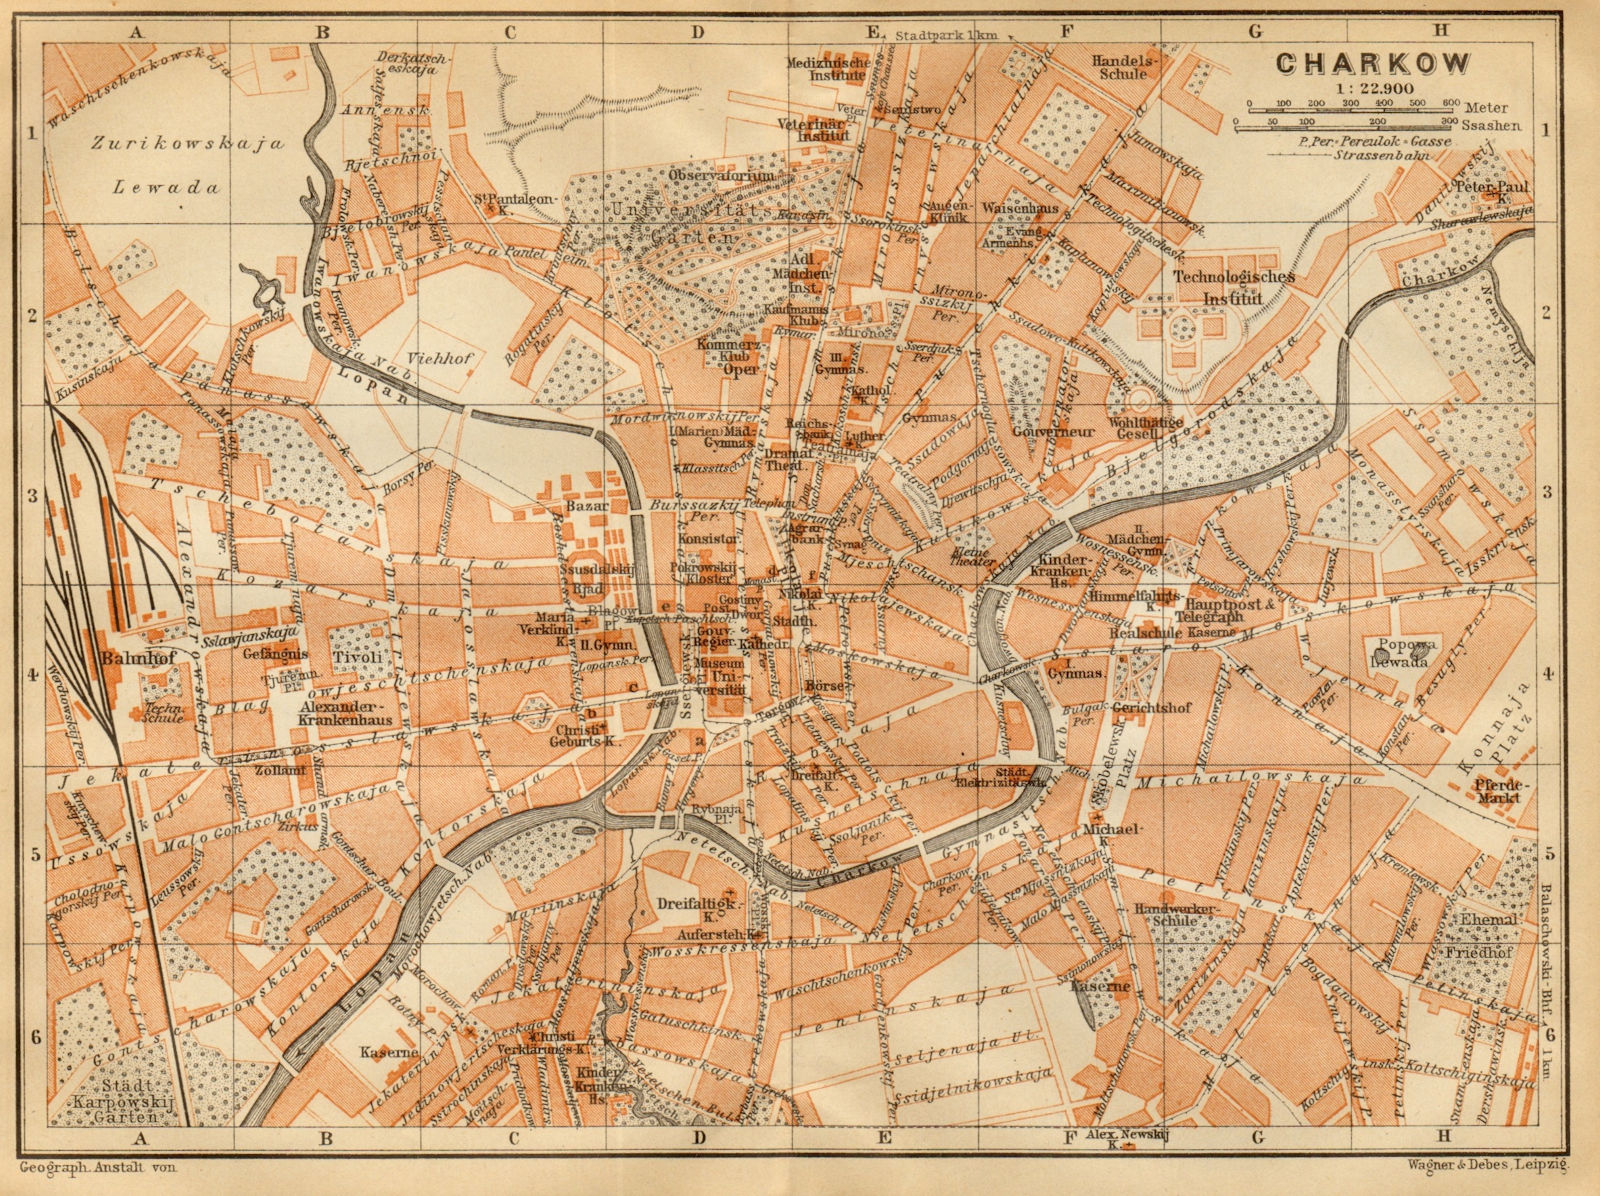 Kharkov/Kharkiv town/city plan. Ukraine. Charkow. BAEDEKER 1912 old map